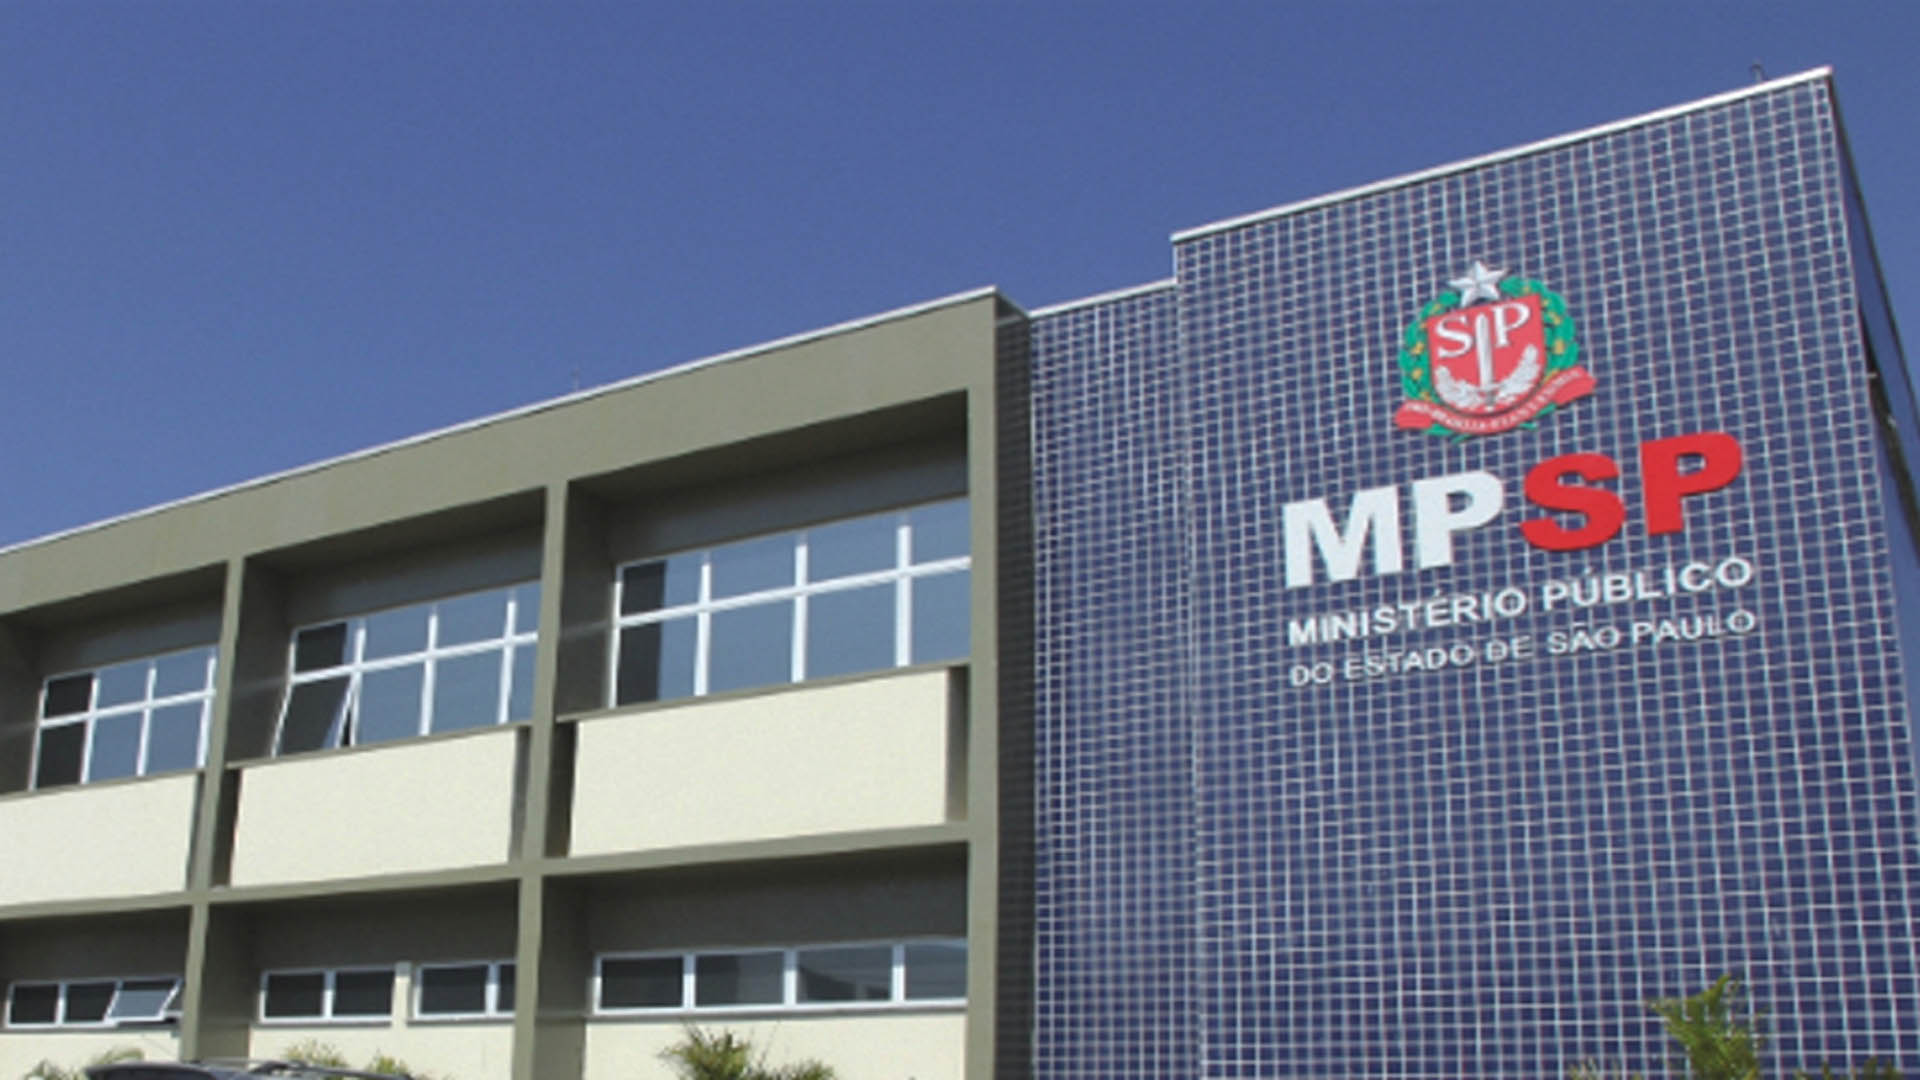 Oficial de Promotoria MPSP: Quantas Horas Estudar Por Dia Para Ser Aprovado  ? 